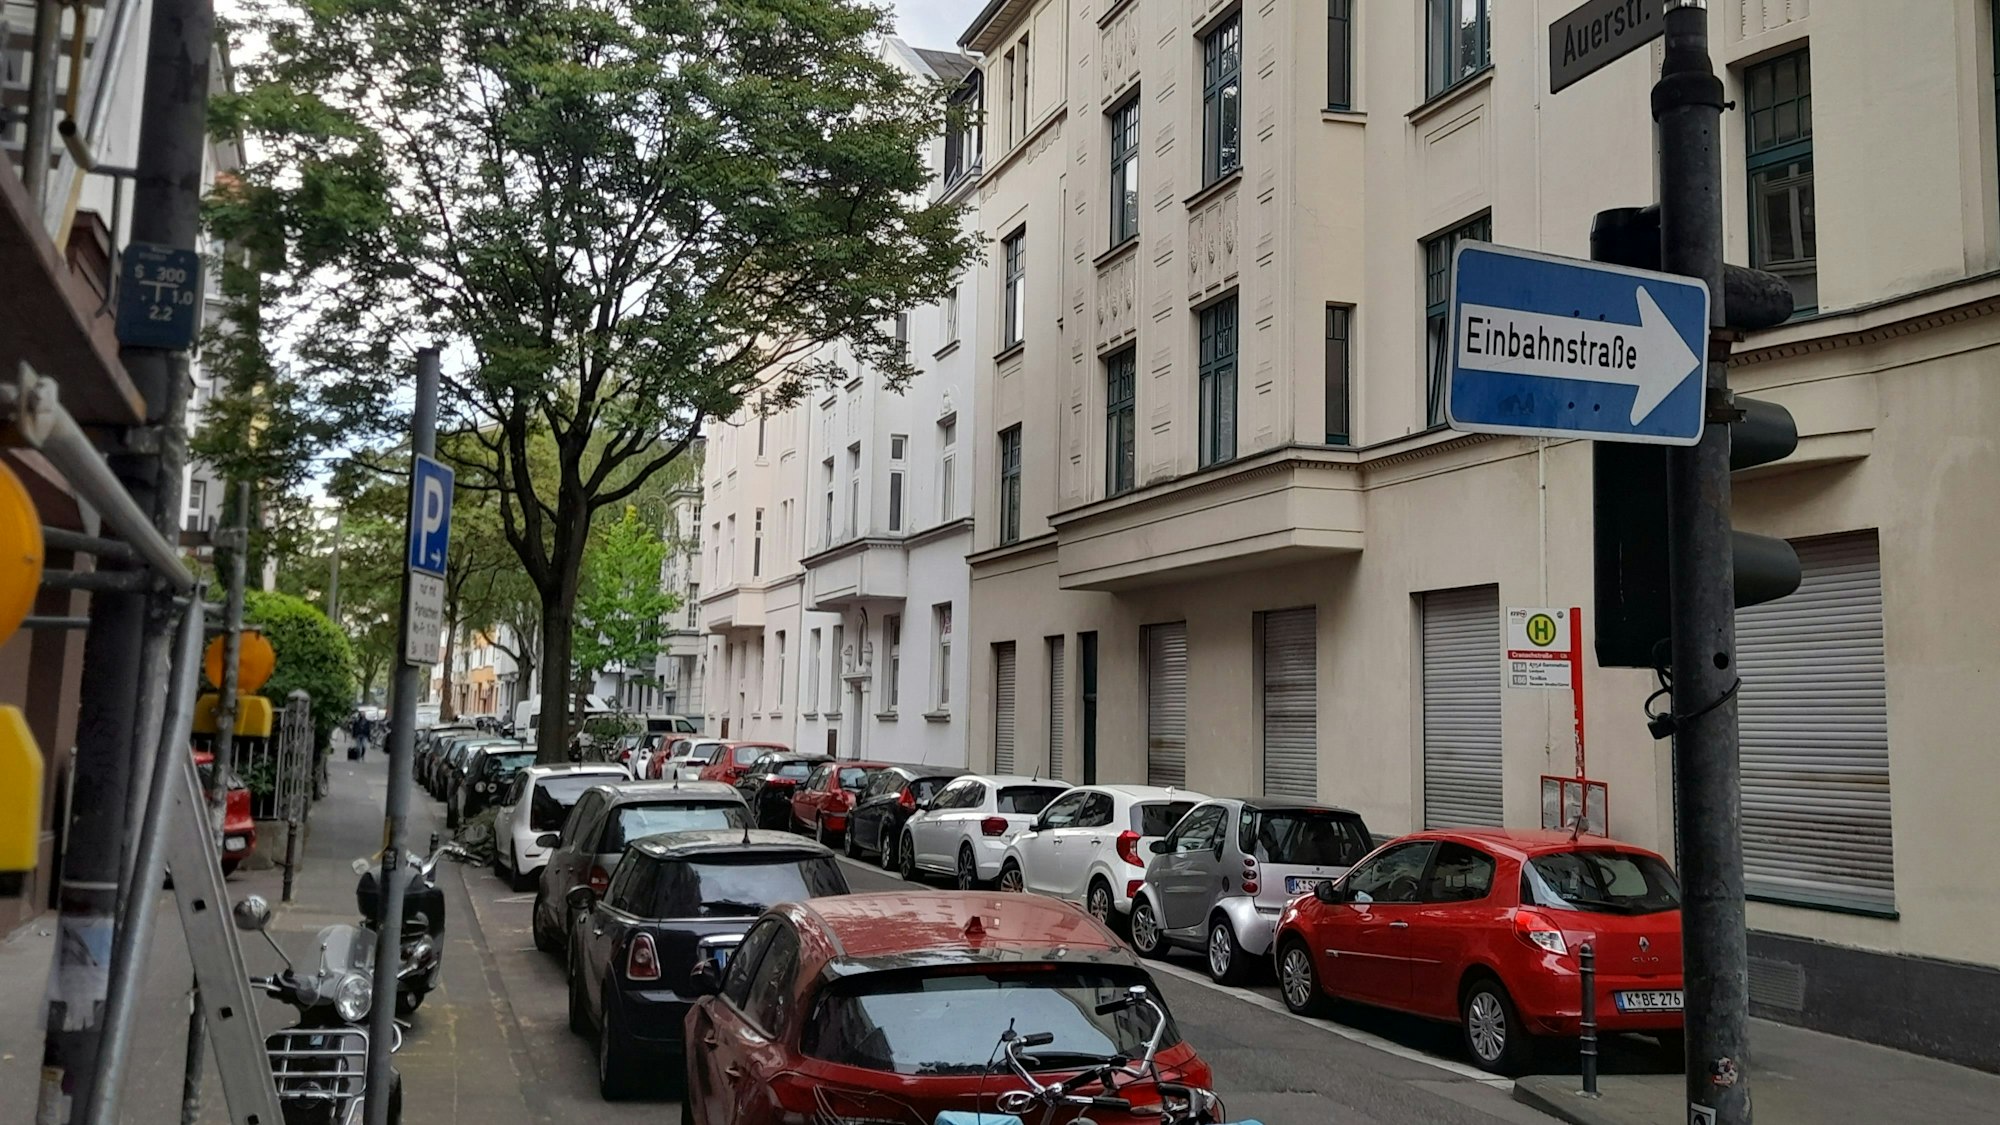 Schmale Einbahnstraße mit parkenden Autos auf beiden Straßenseiten und einem großen Baum auf der linken Straßenseite